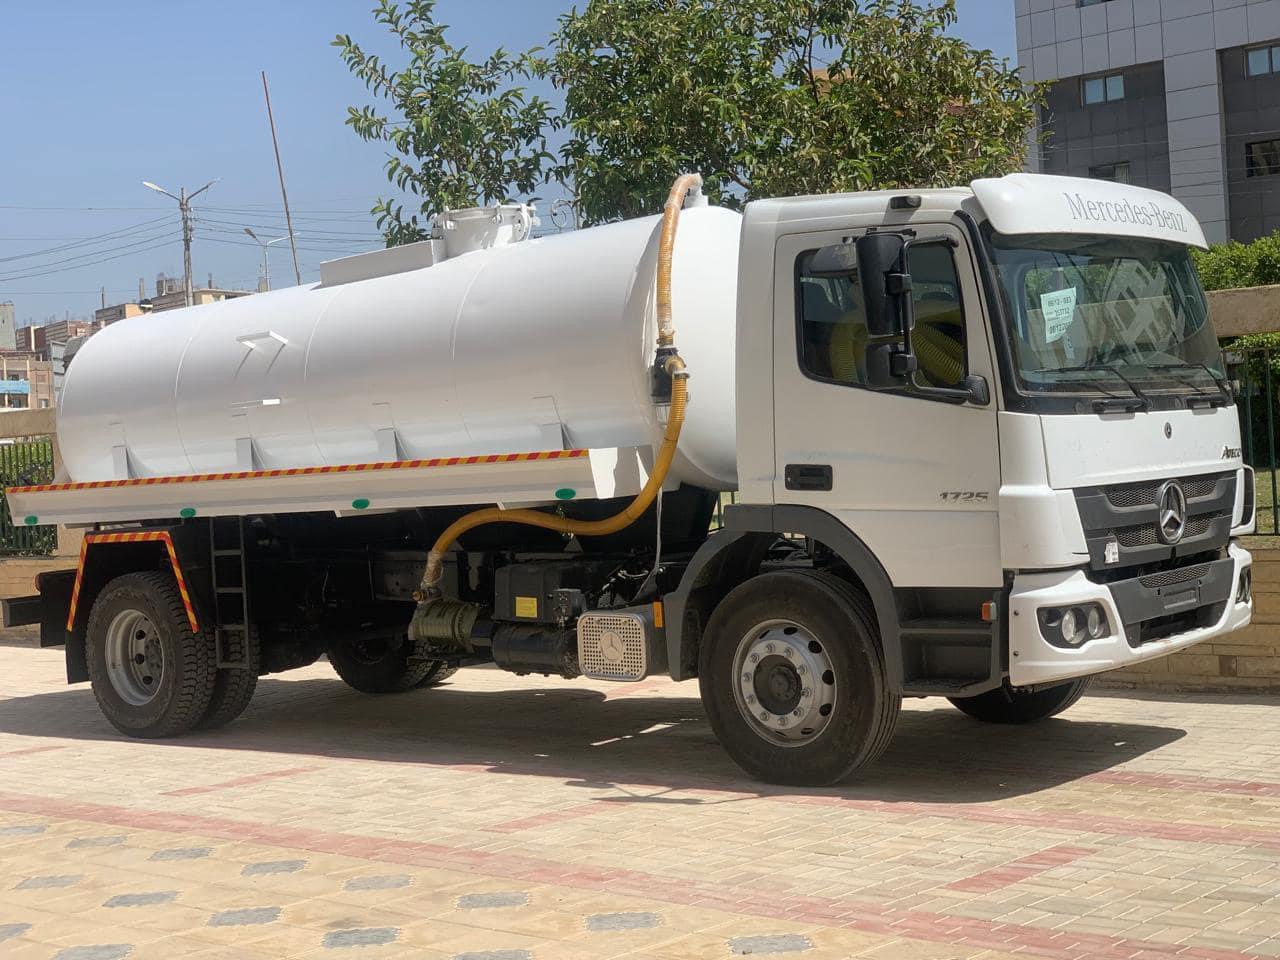 دعم جهاز النظافة بمدينة بلطيم بسيارة كسح مياه ومعدات ومهمات جديدة|صور 